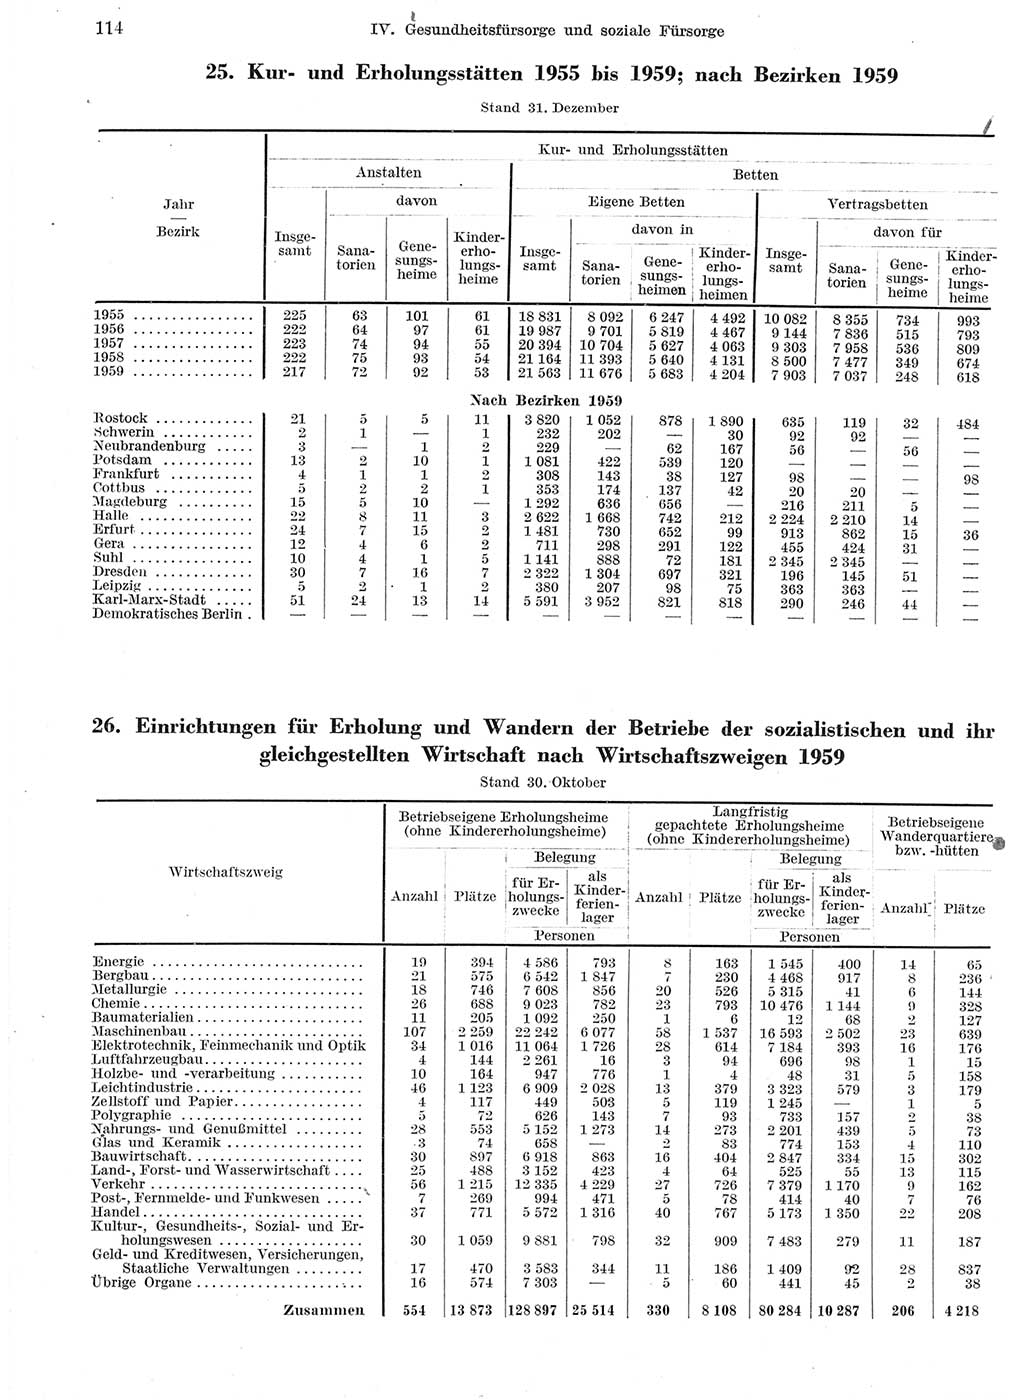 Statistisches Jahrbuch der Deutschen Demokratischen Republik (DDR) 1959, Seite 114 (Stat. Jb. DDR 1959, S. 114)